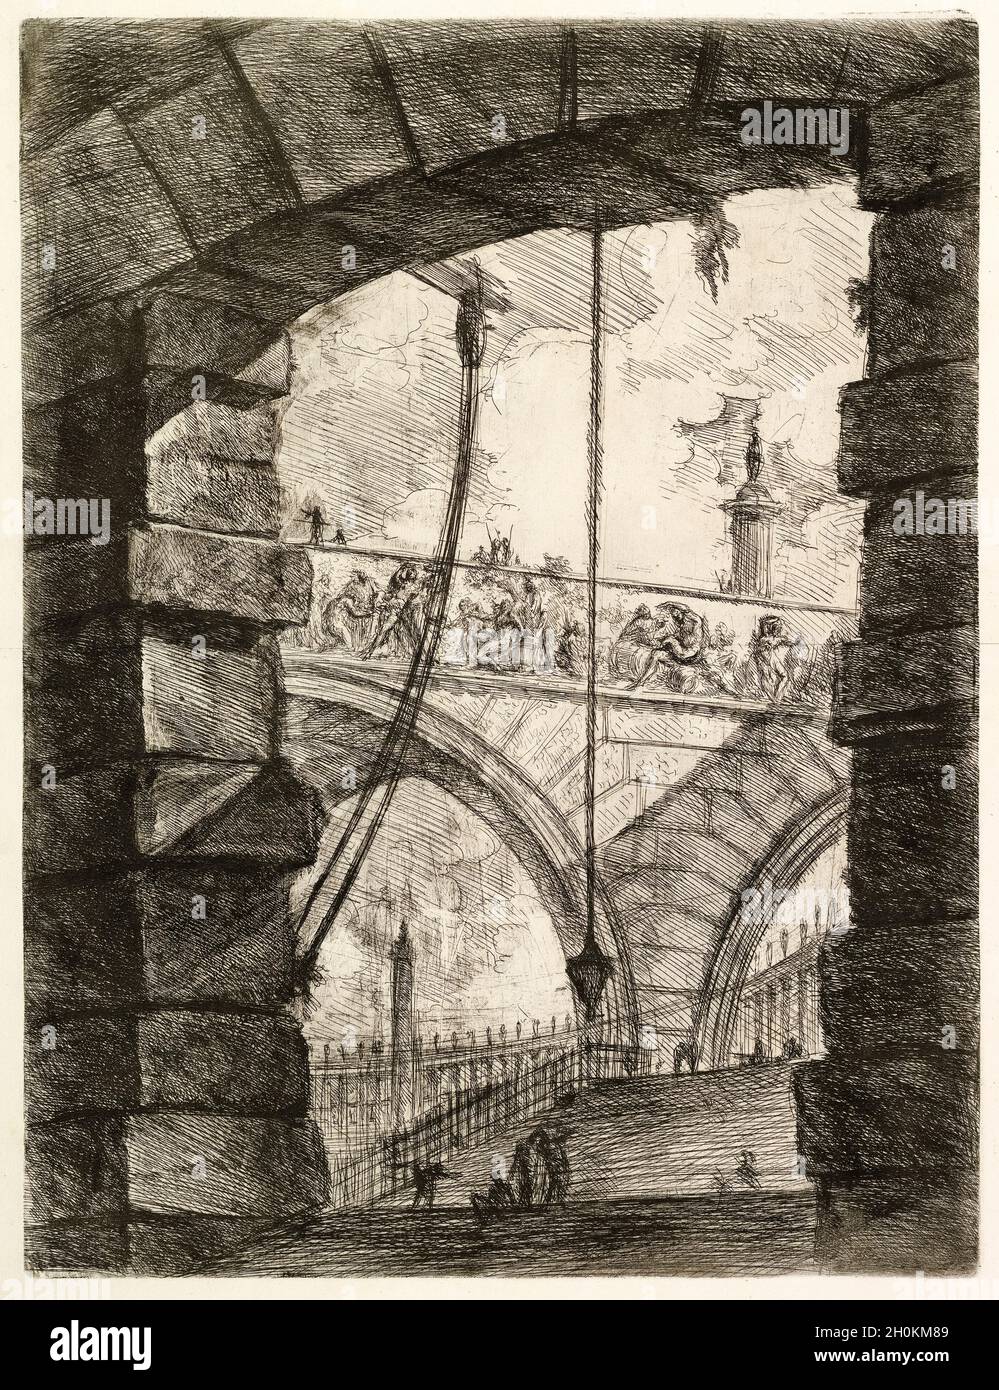 Giovanni Battista Piranesi, The Grand Piazza, from Carceri d'invenzione (Imaginary Prisons), engraving, 1749-1750 Stock Photo